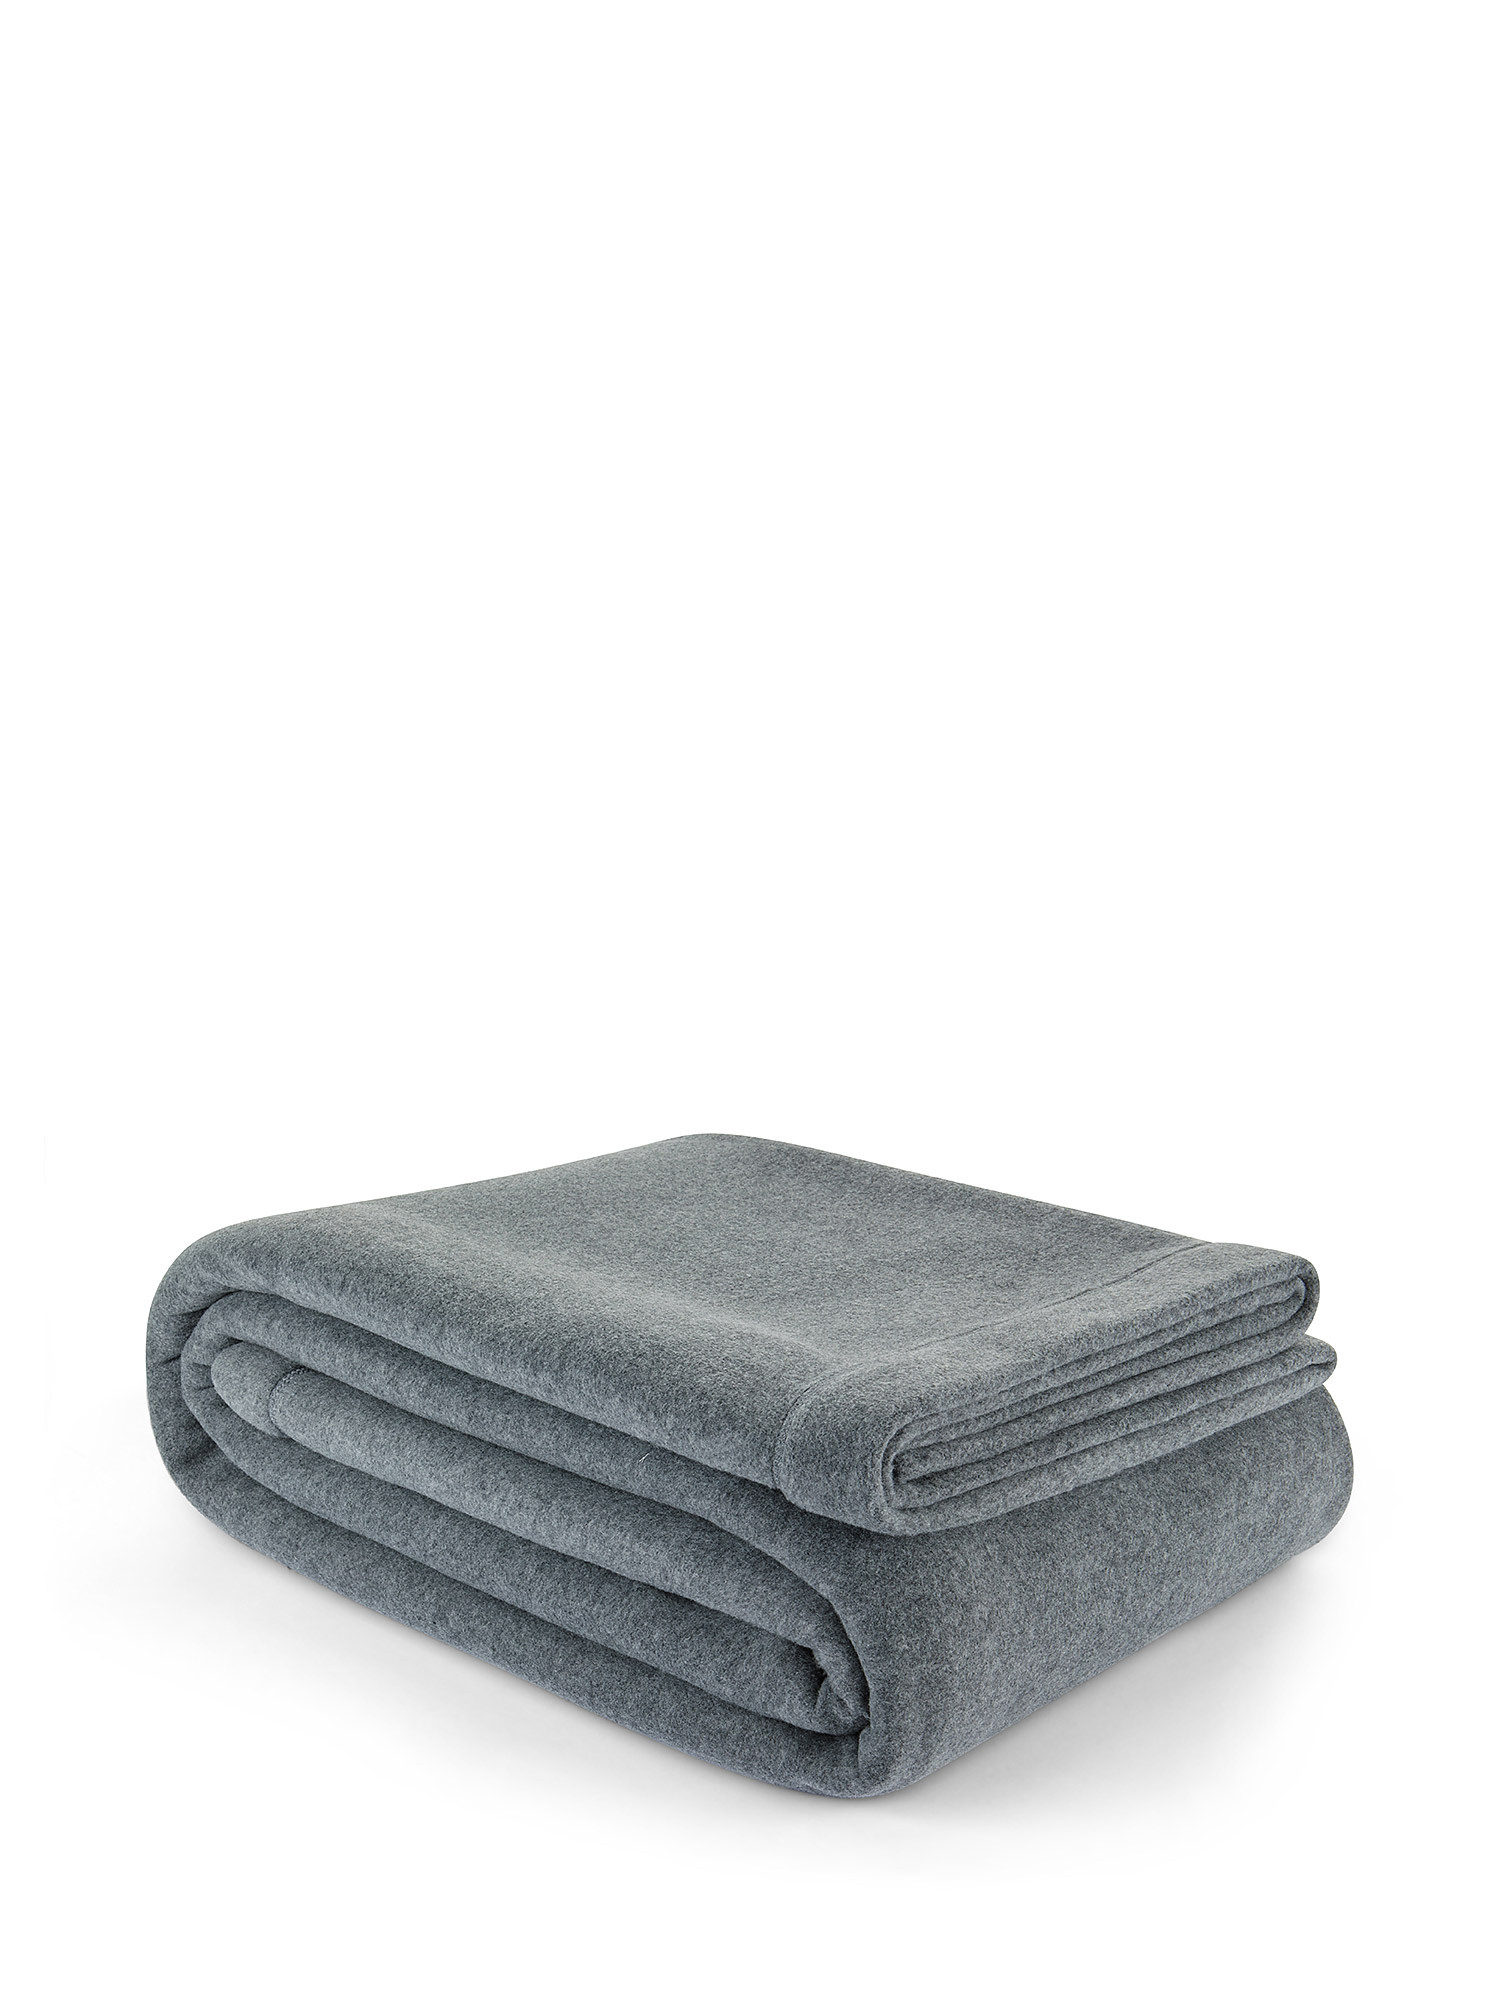 Solid color soft fleece blanket, Grey, large image number 0